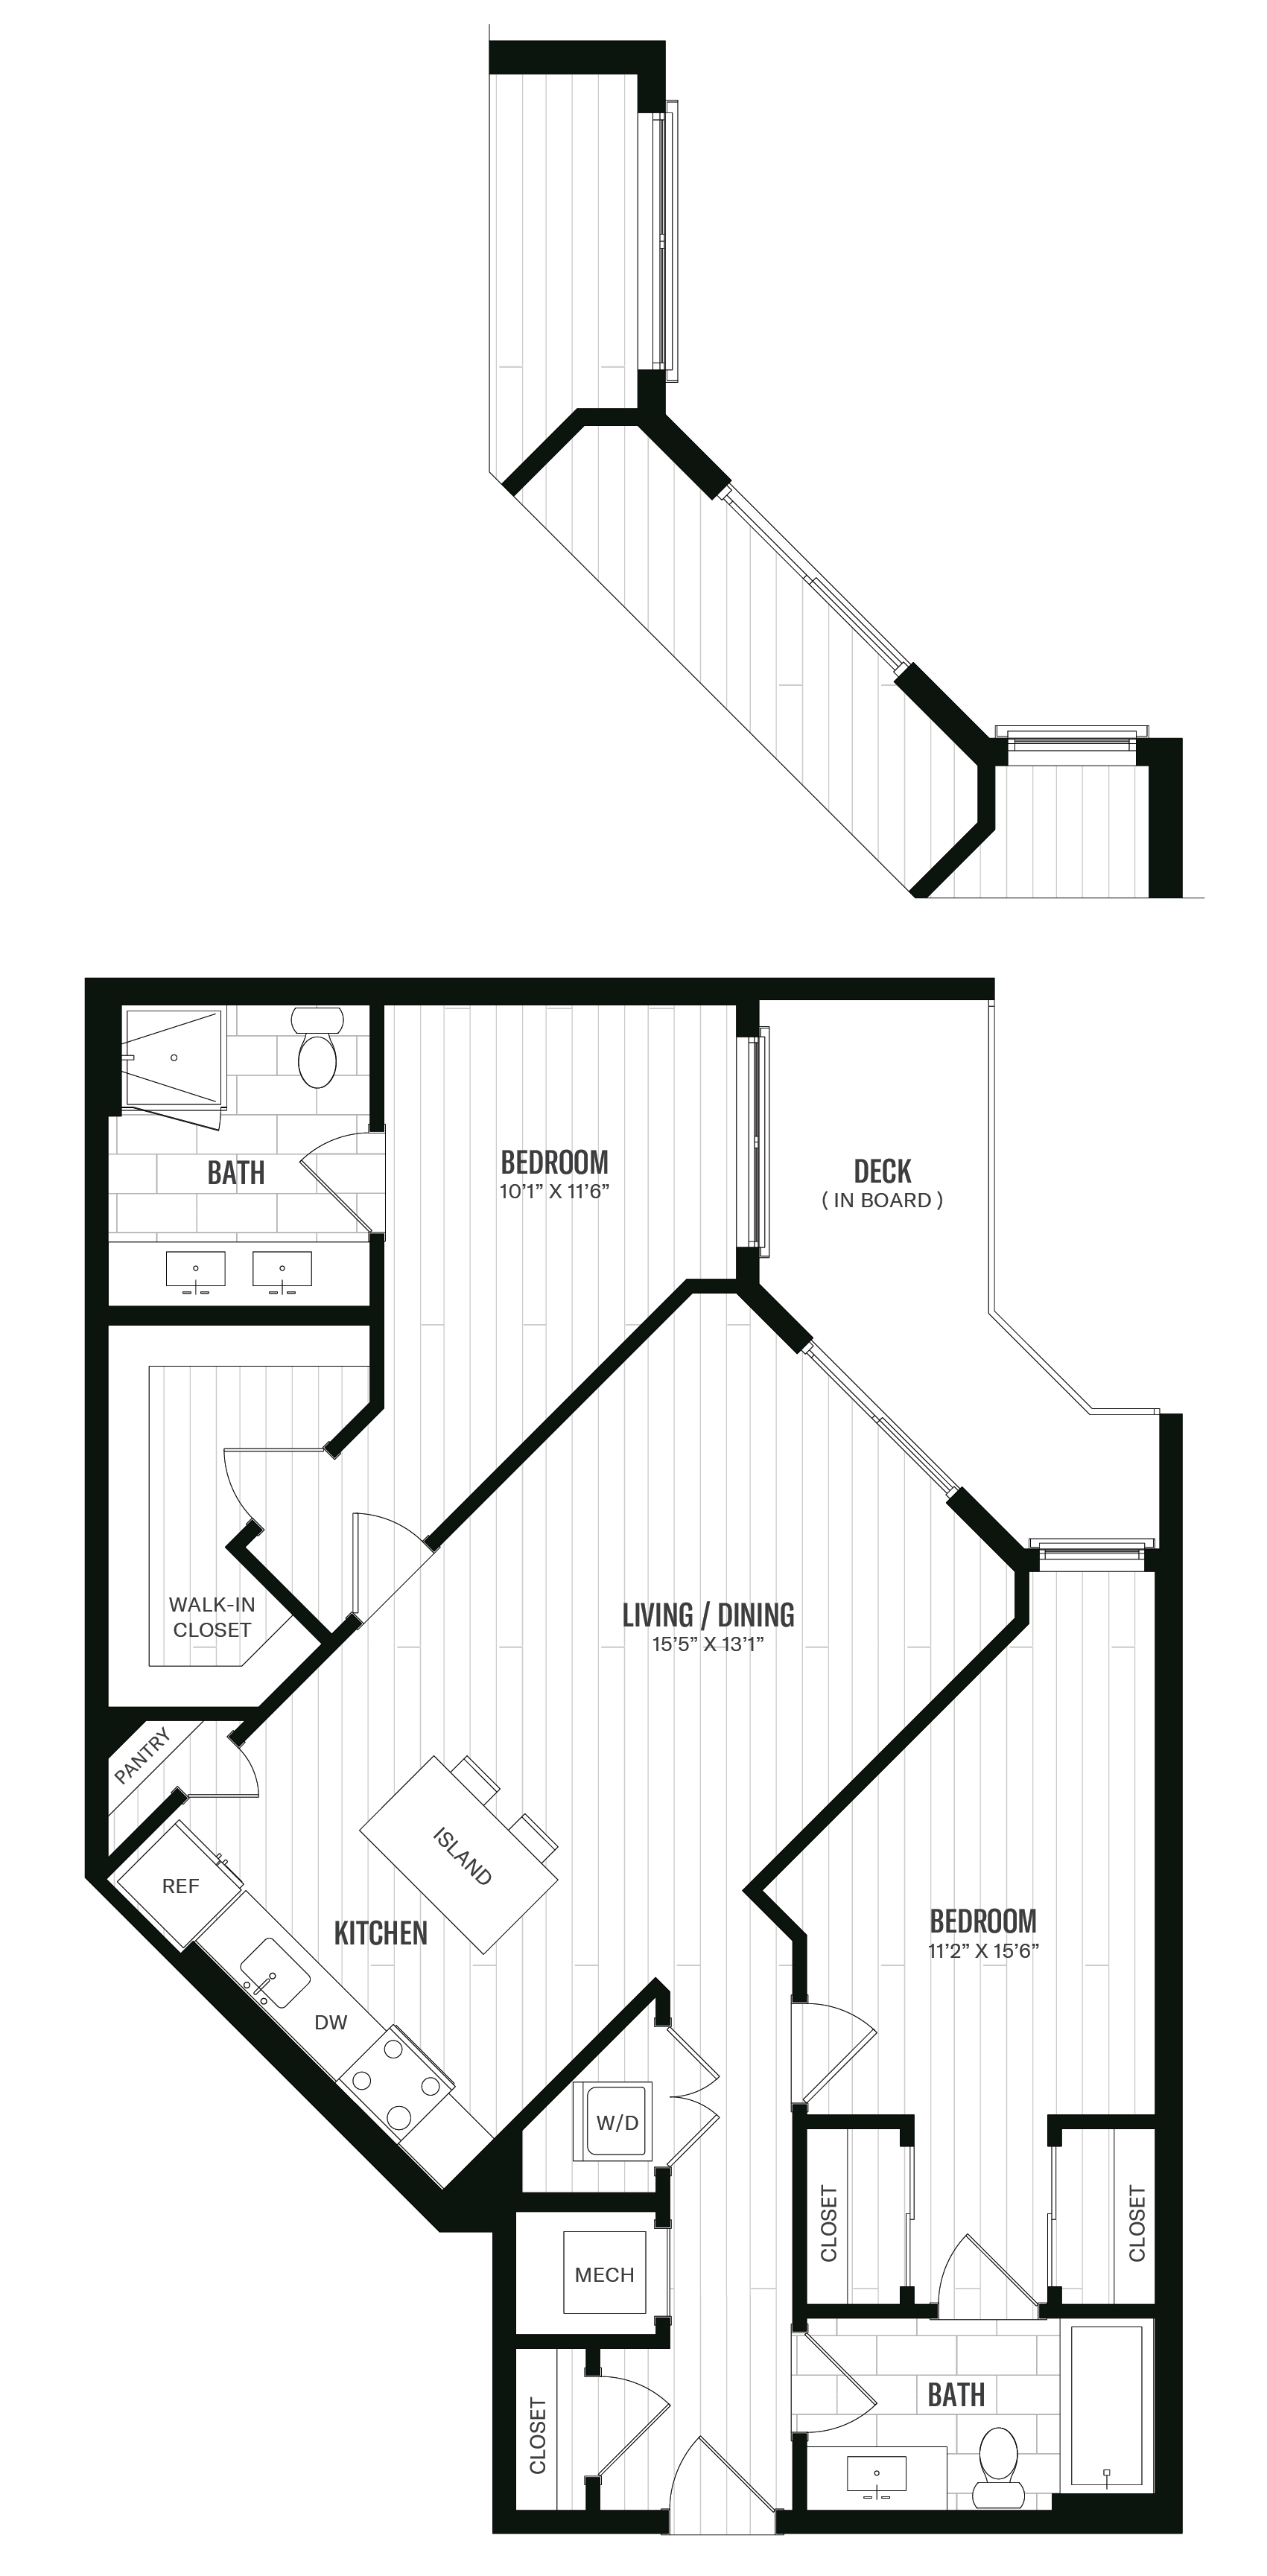 Floorplan image of unit 603